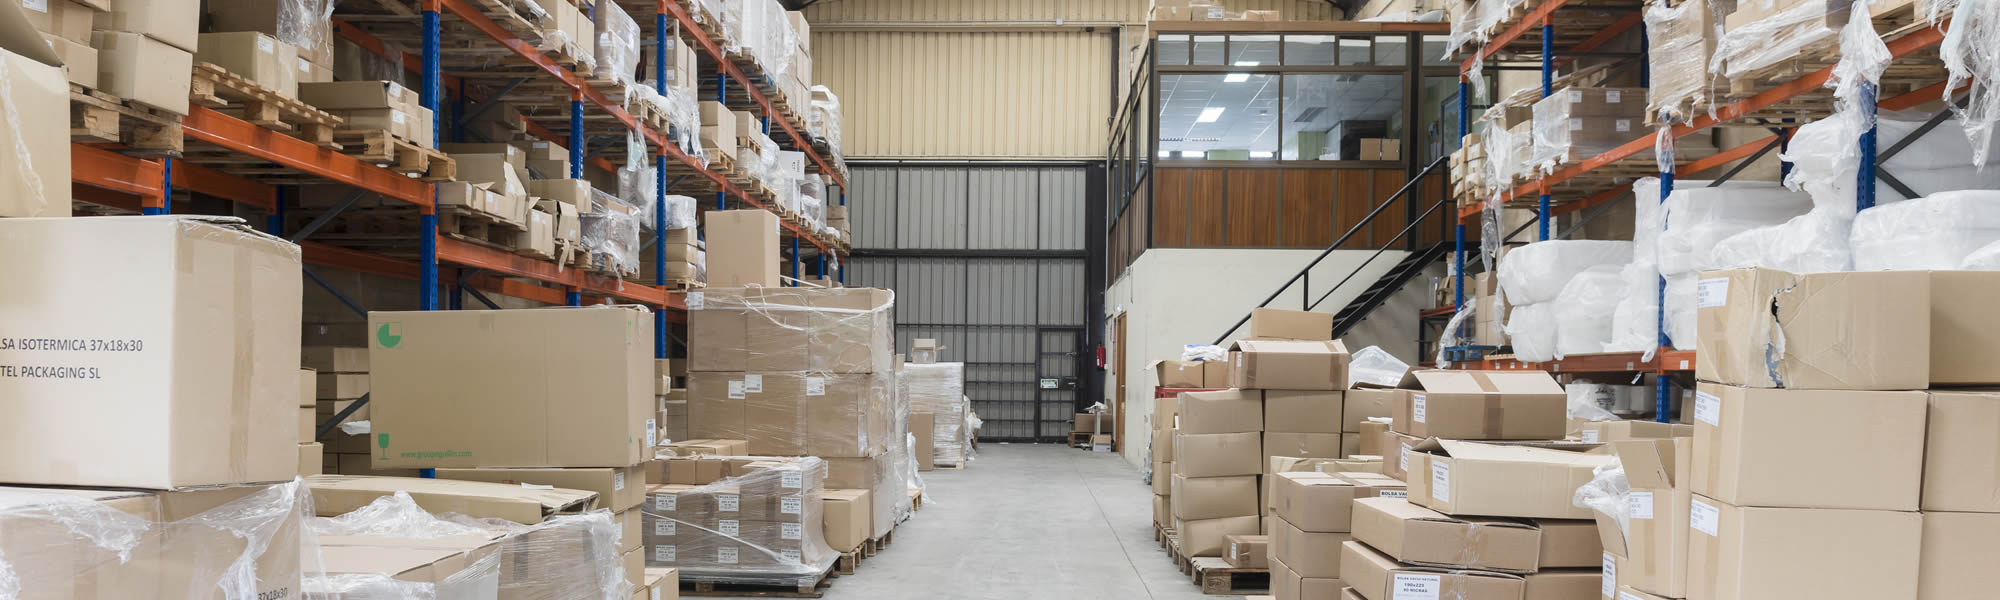 Zubelzu dispone de más de 1000 metros cuadrados dedicados a ofrecerte el mejor servicio de embalaje y packaging